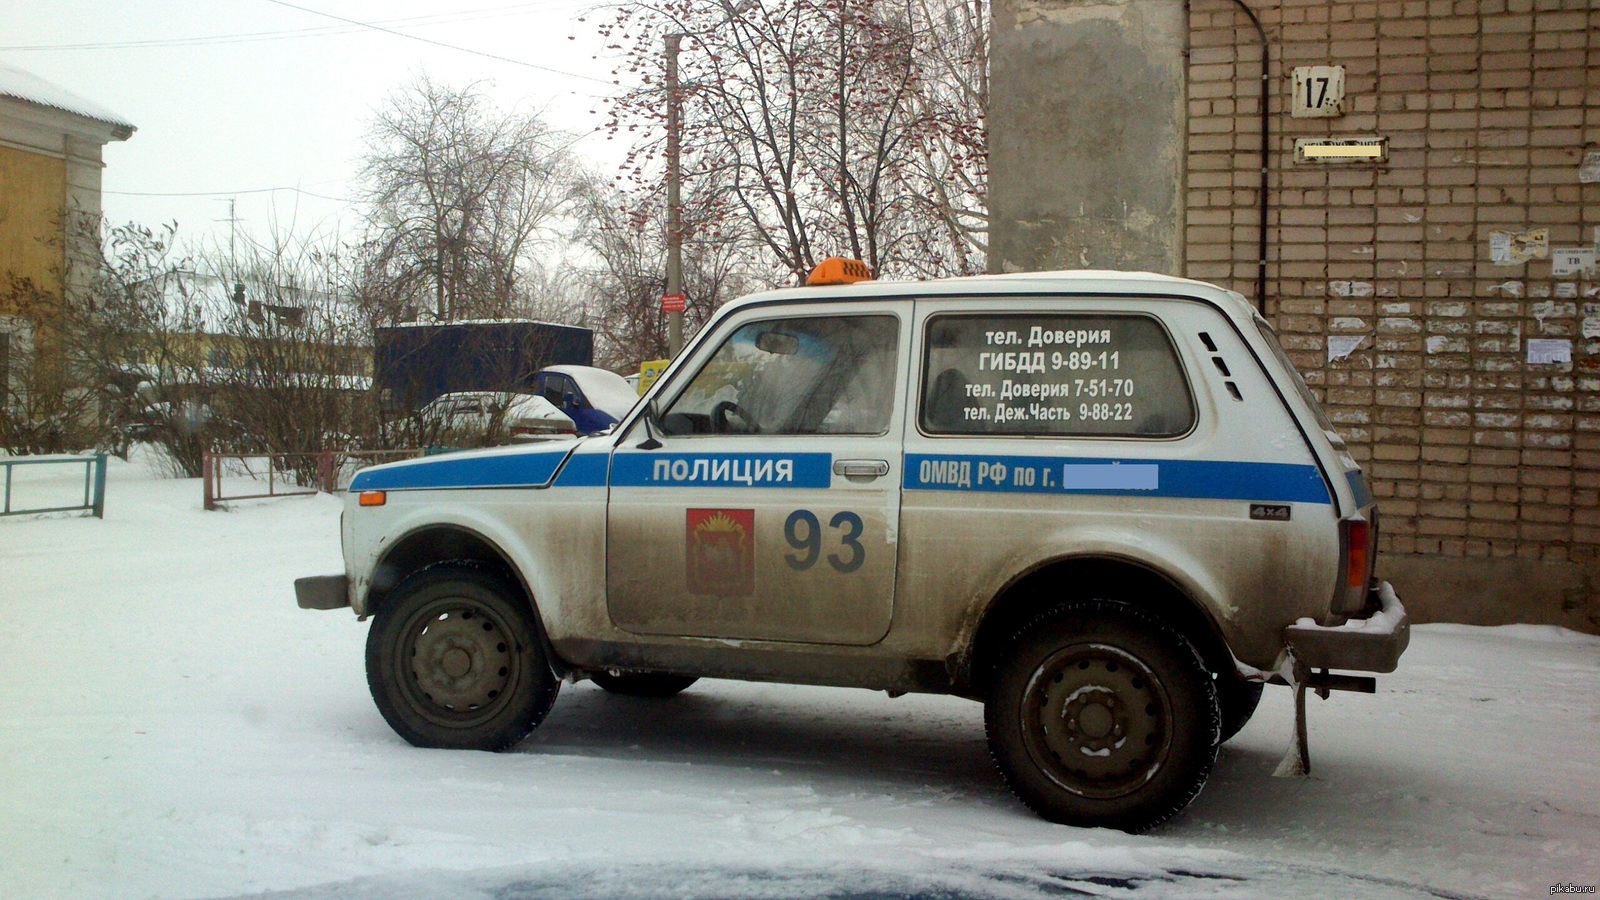 Пьяное такси по городу. Такси вези Николаев. Такси полиция. Такси такси вези. Такси такси вези вези вдоль ночных дорог.